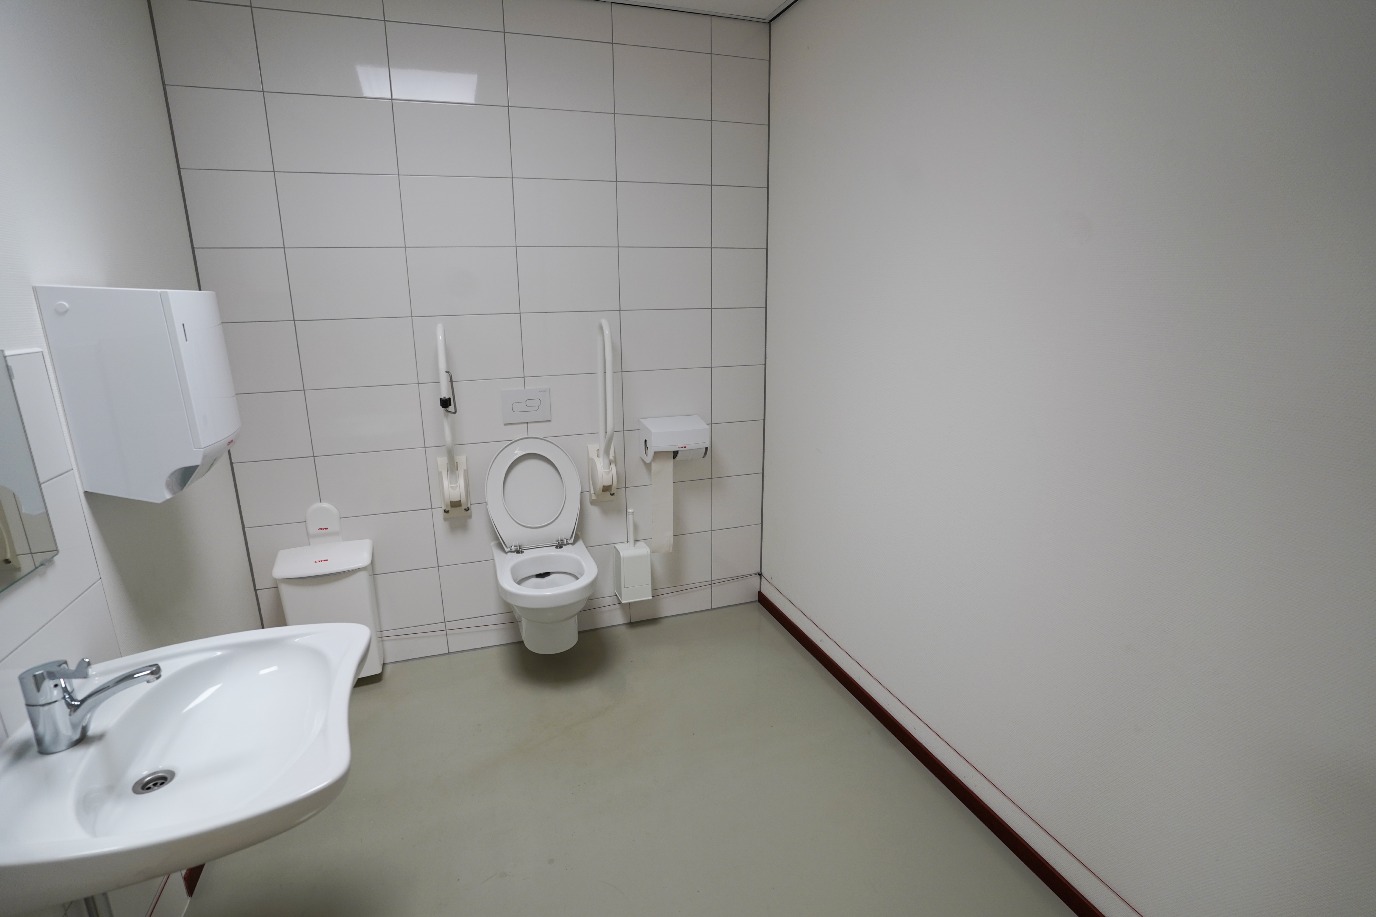 Wheelchair-friendly toilet on site